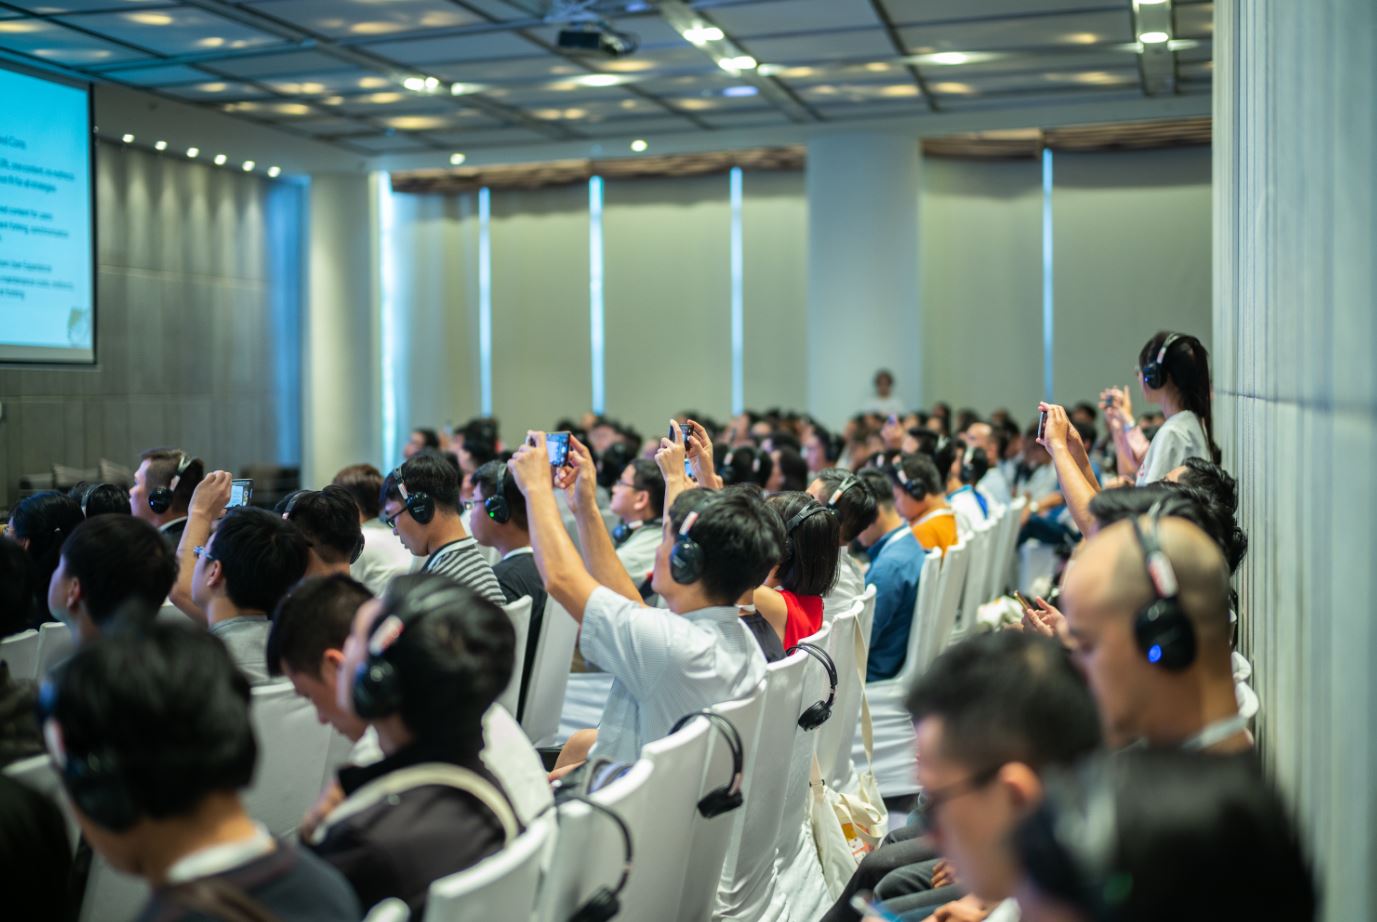 Webmaster Conference - Hội thảo miễn phí hướng dẫn tối ưu hiệu suất website lần đầu tiên được Google tổ chức tại Việt Nam